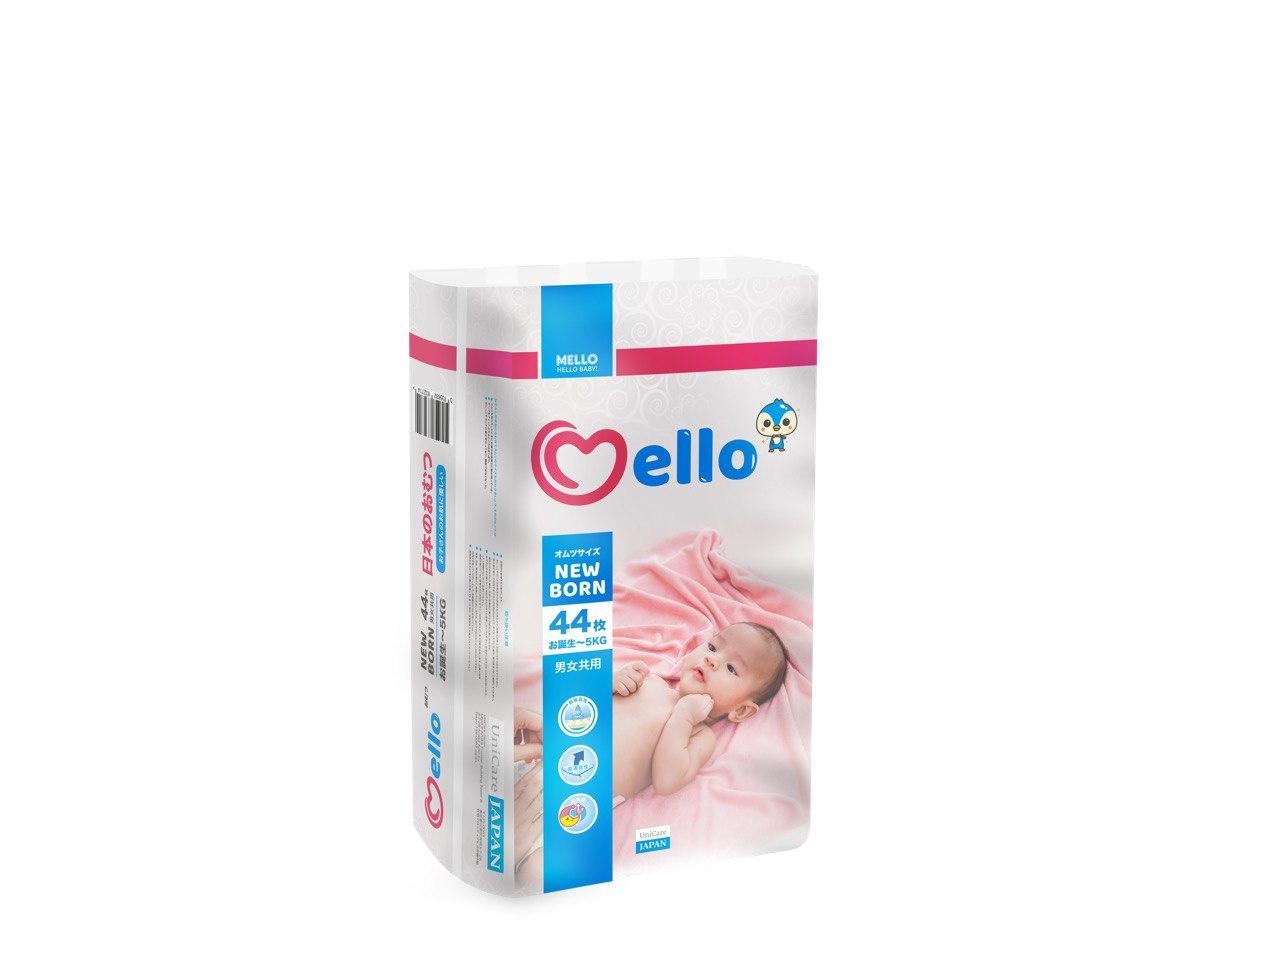 Подгузники Mello Newborn (до 5 кг) 44 штуки для новорождённых